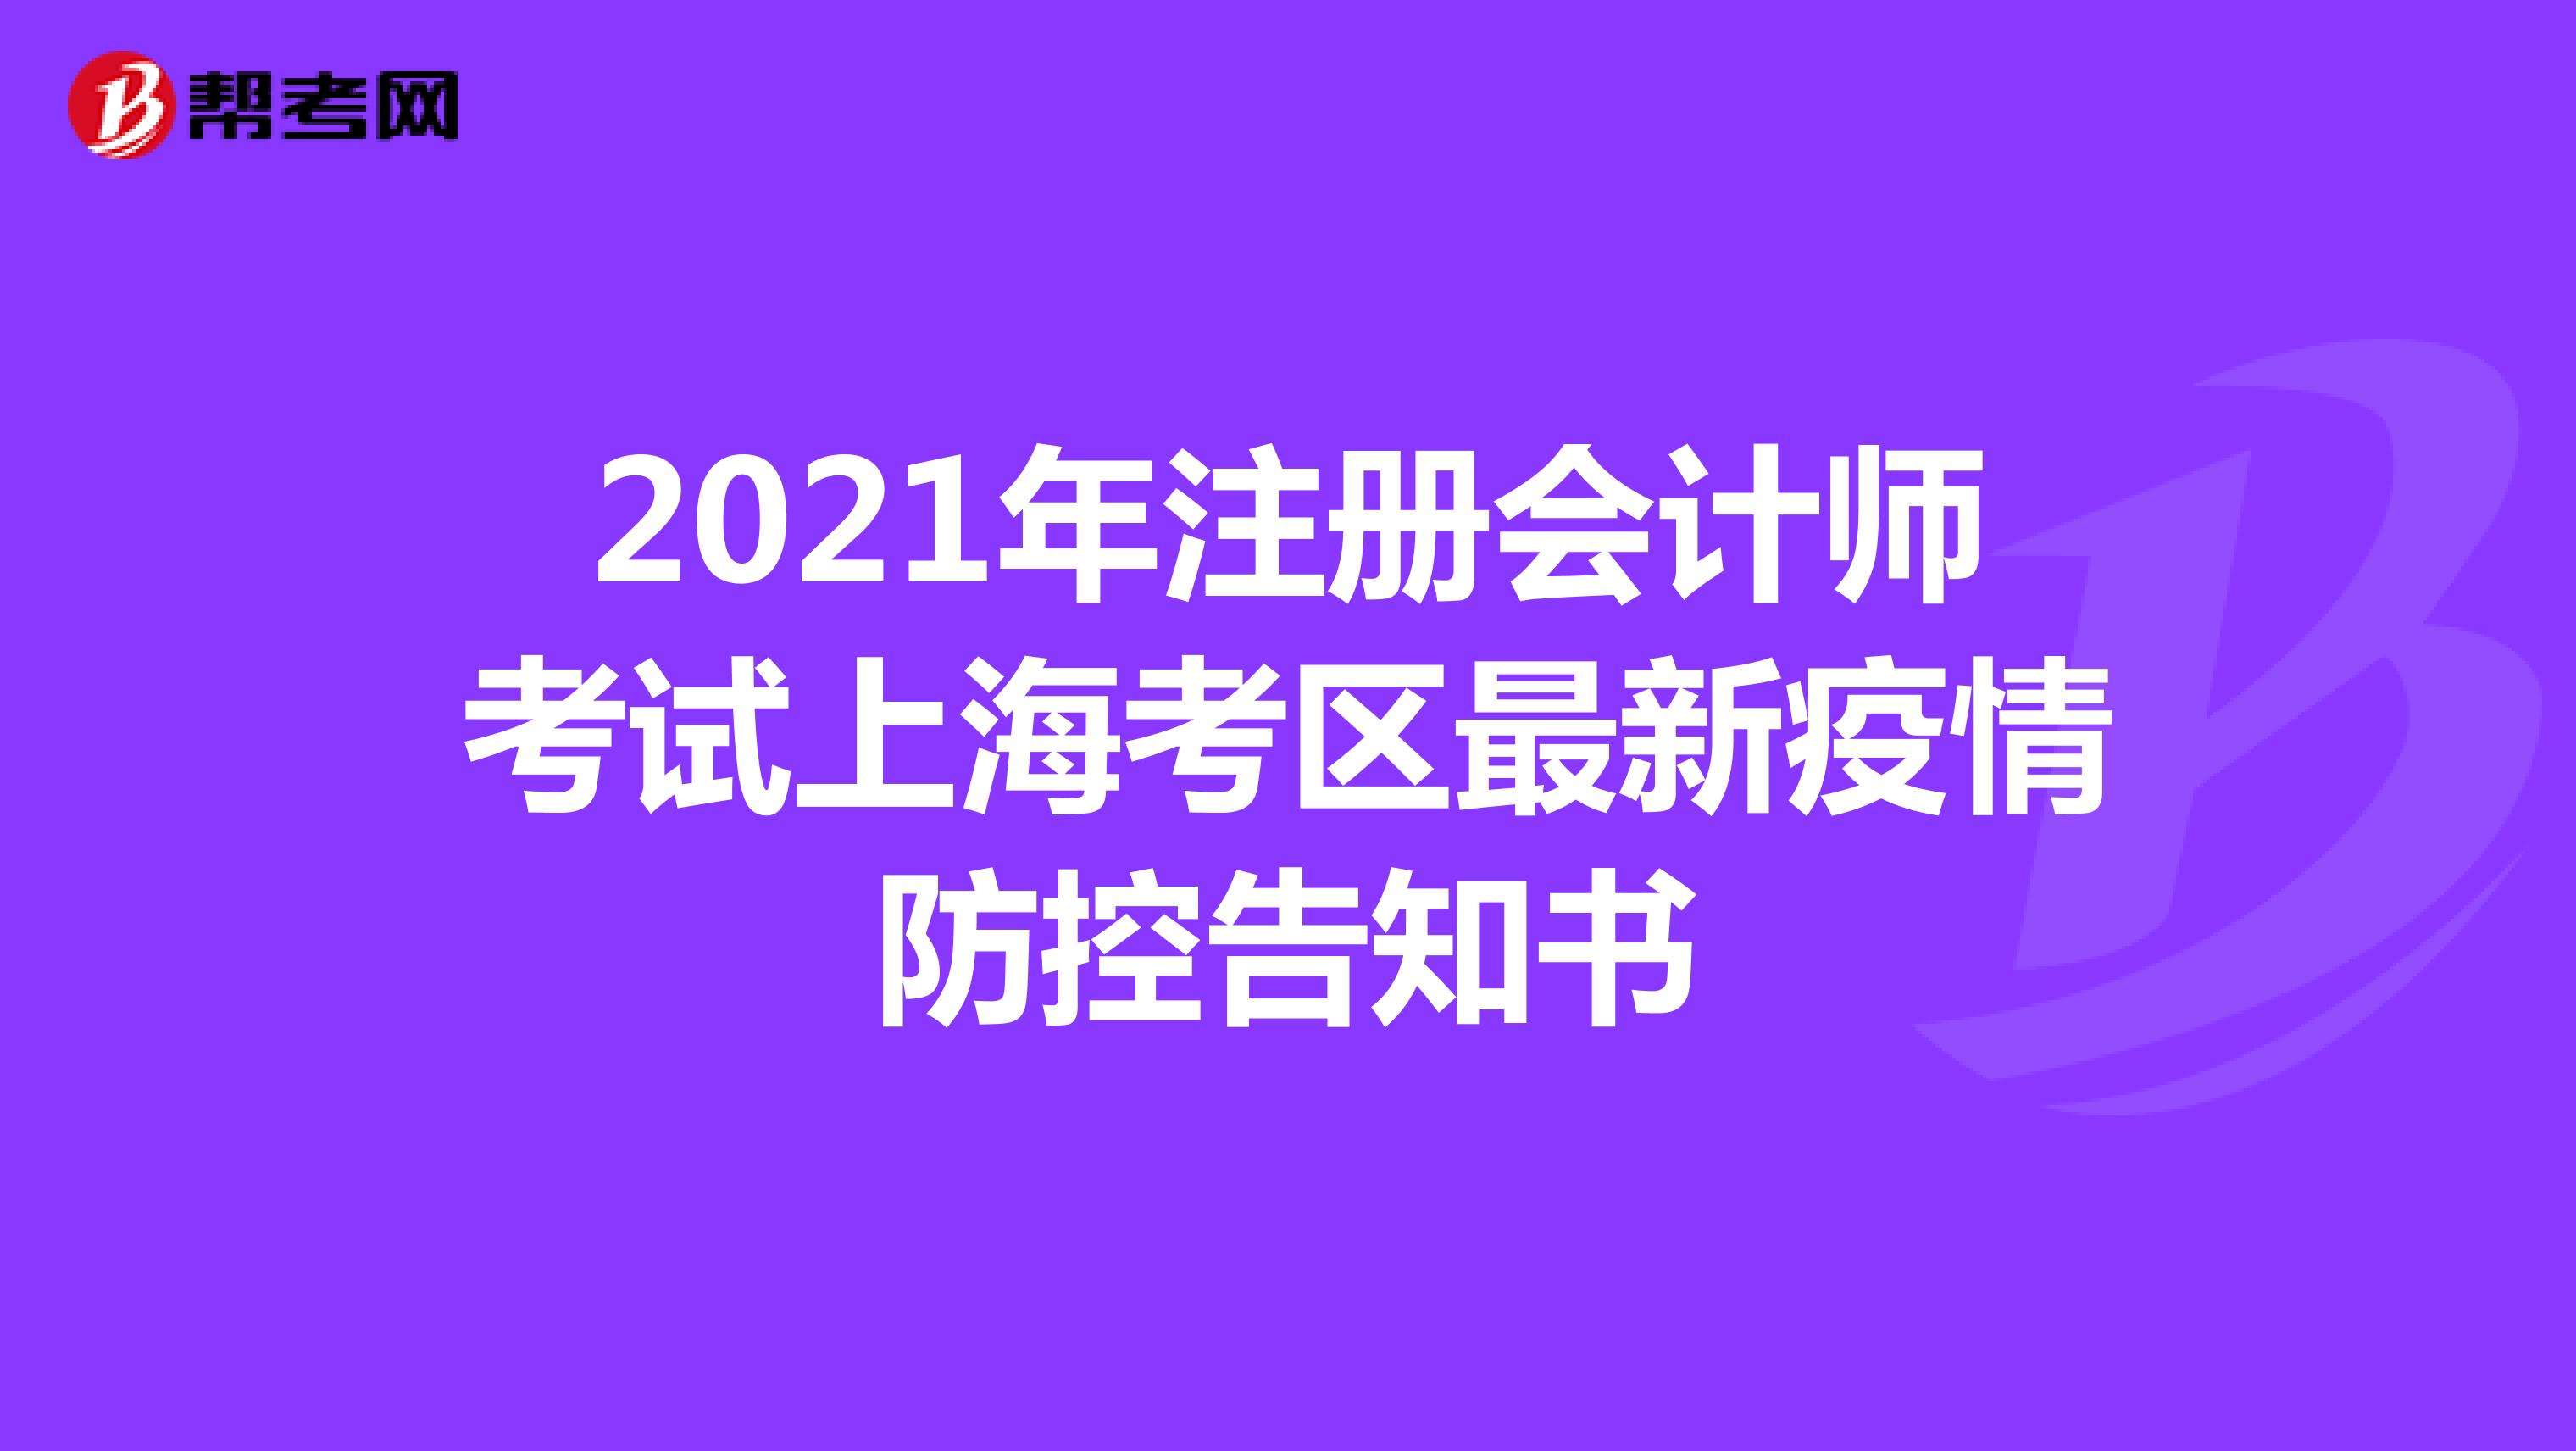 2021年注册会计师考试上海考区最新疫情防控告知书